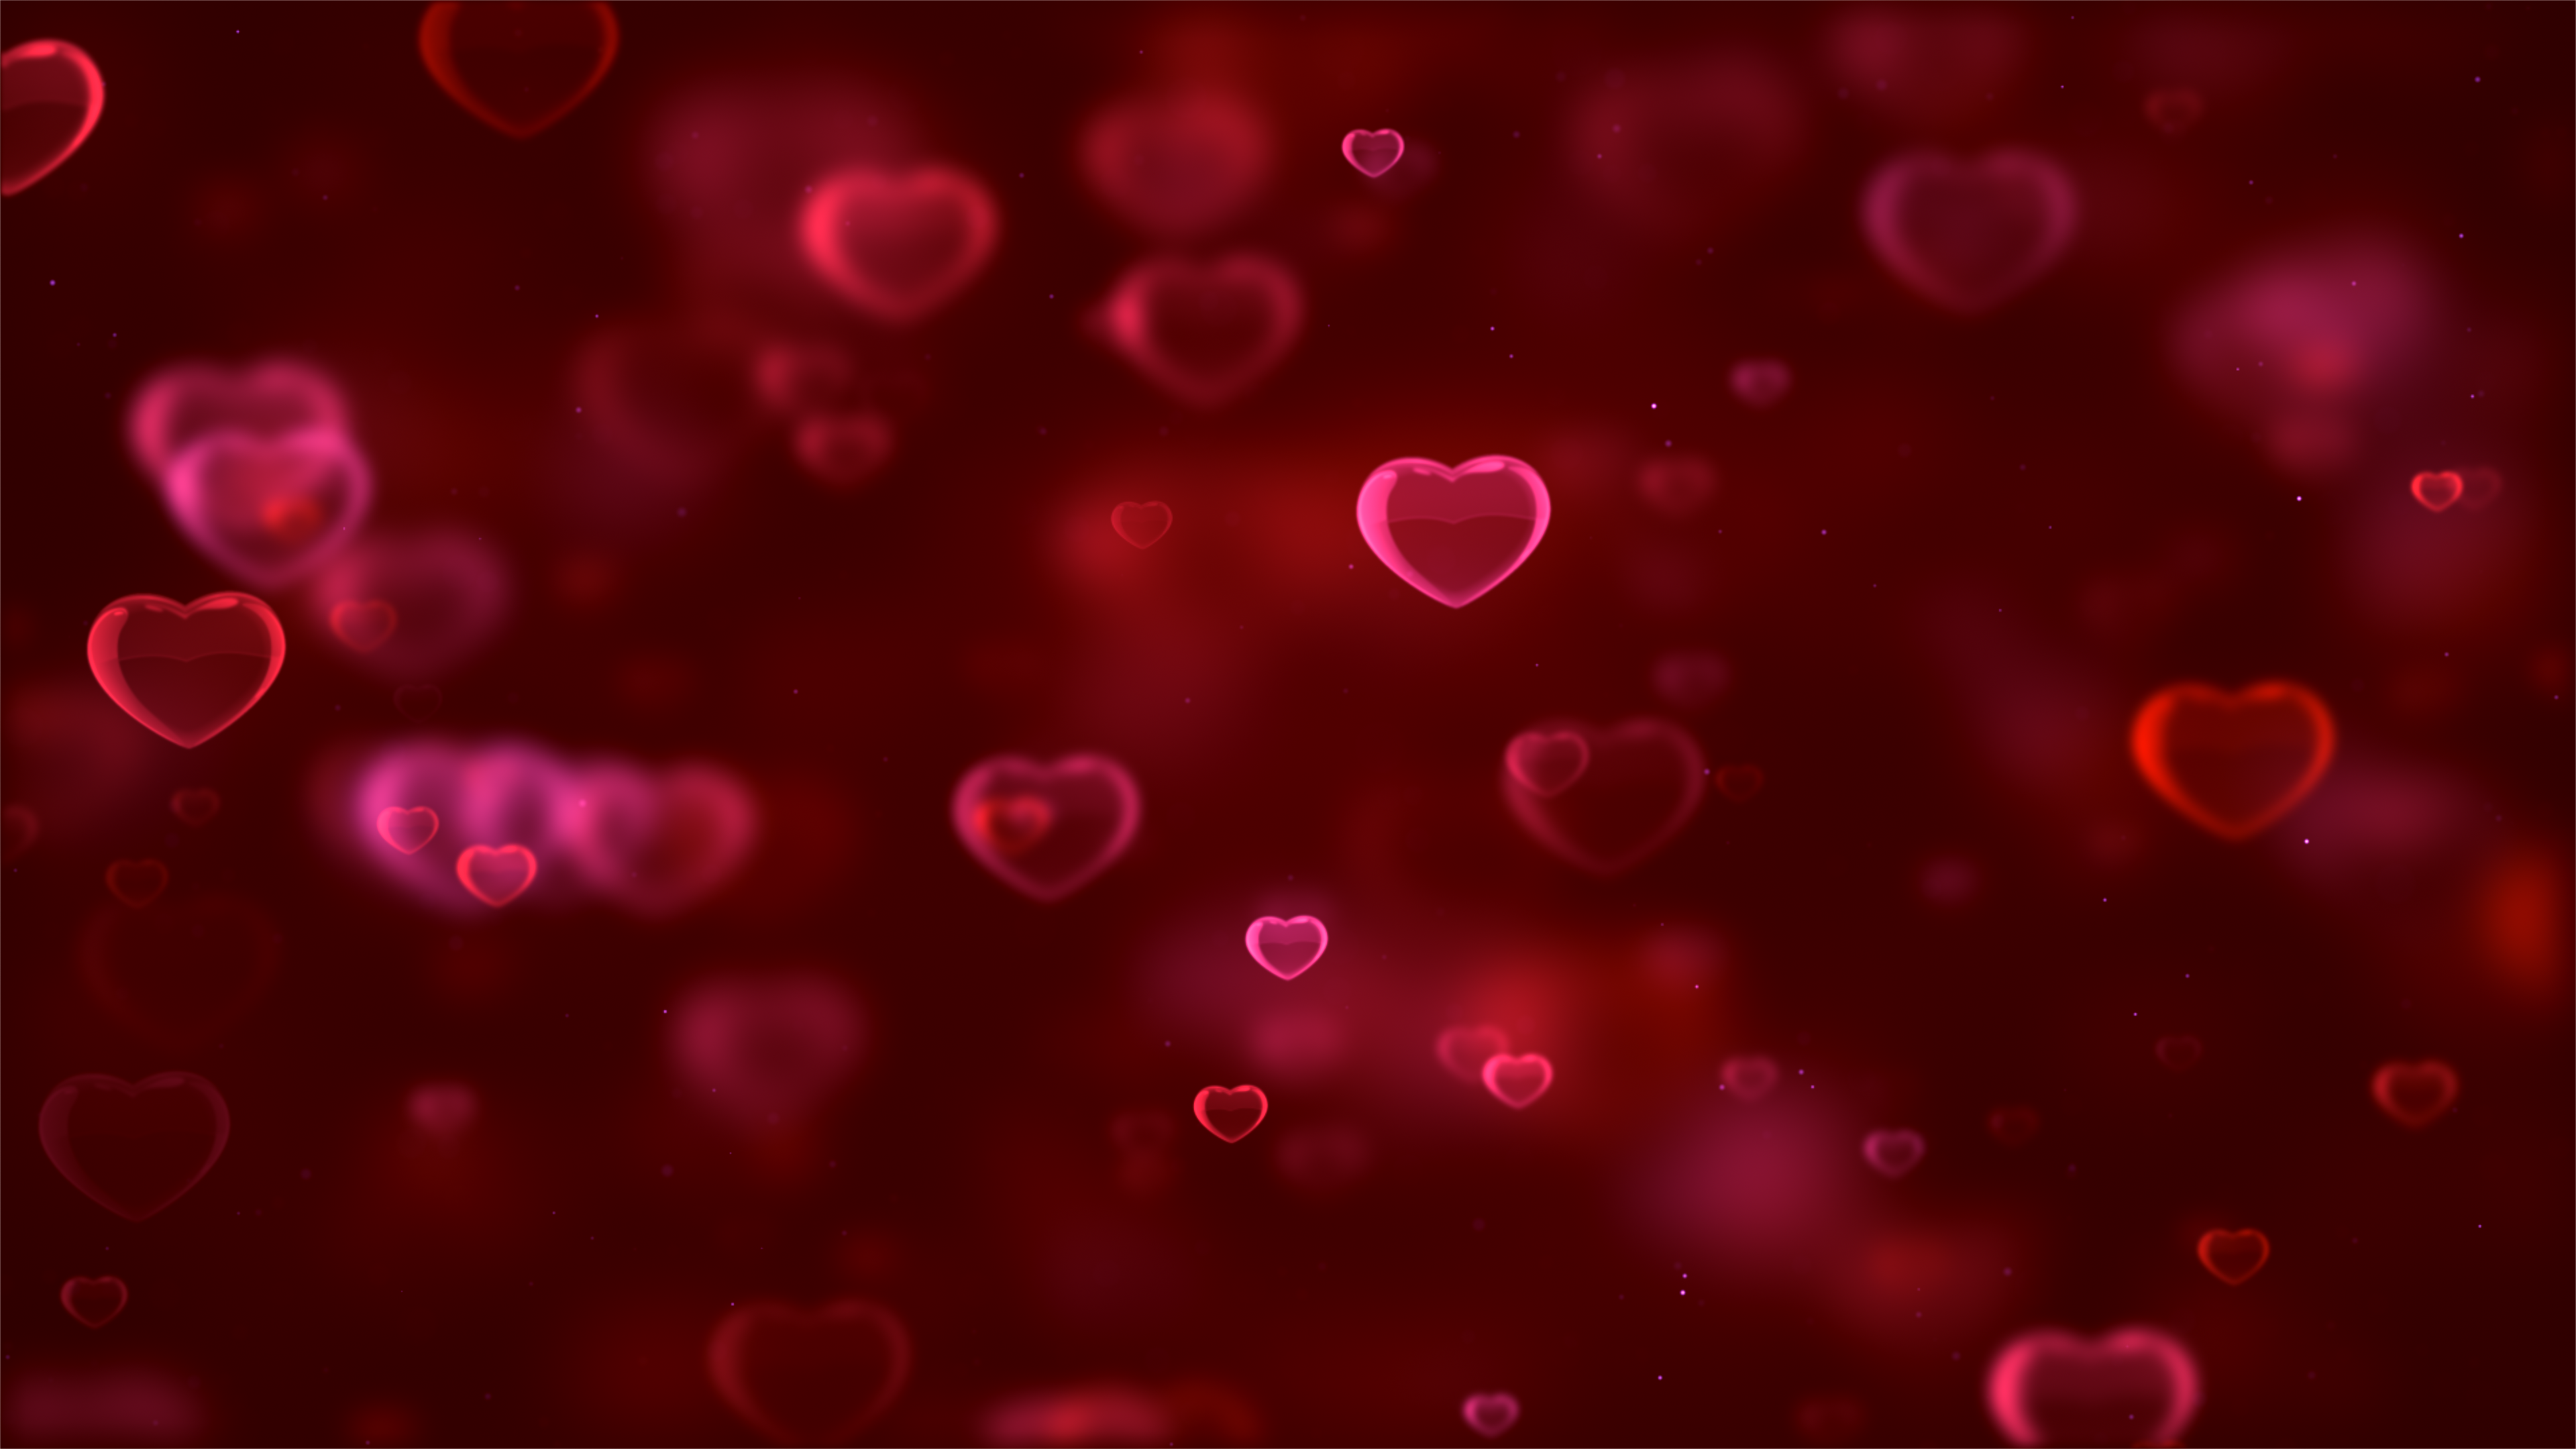 Hình nền trái tim đỏ sẽ khiến cho không gian desktop của bạn tràn ngập tình yêu và lãng mạn. Được thiết kế với các họa tiết hoa lá đơn giản nhưng đầy ý nghĩa, hình ảnh này sẽ khiến bạn nhớ đến người mình yêu và thích thú khi ngắm nhìn. Hãy trang trí màn hình desktop của mình với hình nền trái tim đỏ để tạo cảm giác ấm áp và yêu thương. (The red hearts wallpaper will fill your desktop space with love and romance. Designed with simple yet meaningful flower and leaf patterns, this image will remind you of your loved ones and bring joy when admiring it. Decorate your desktop screen with this red hearts wallpaper to create warmth and affection.)